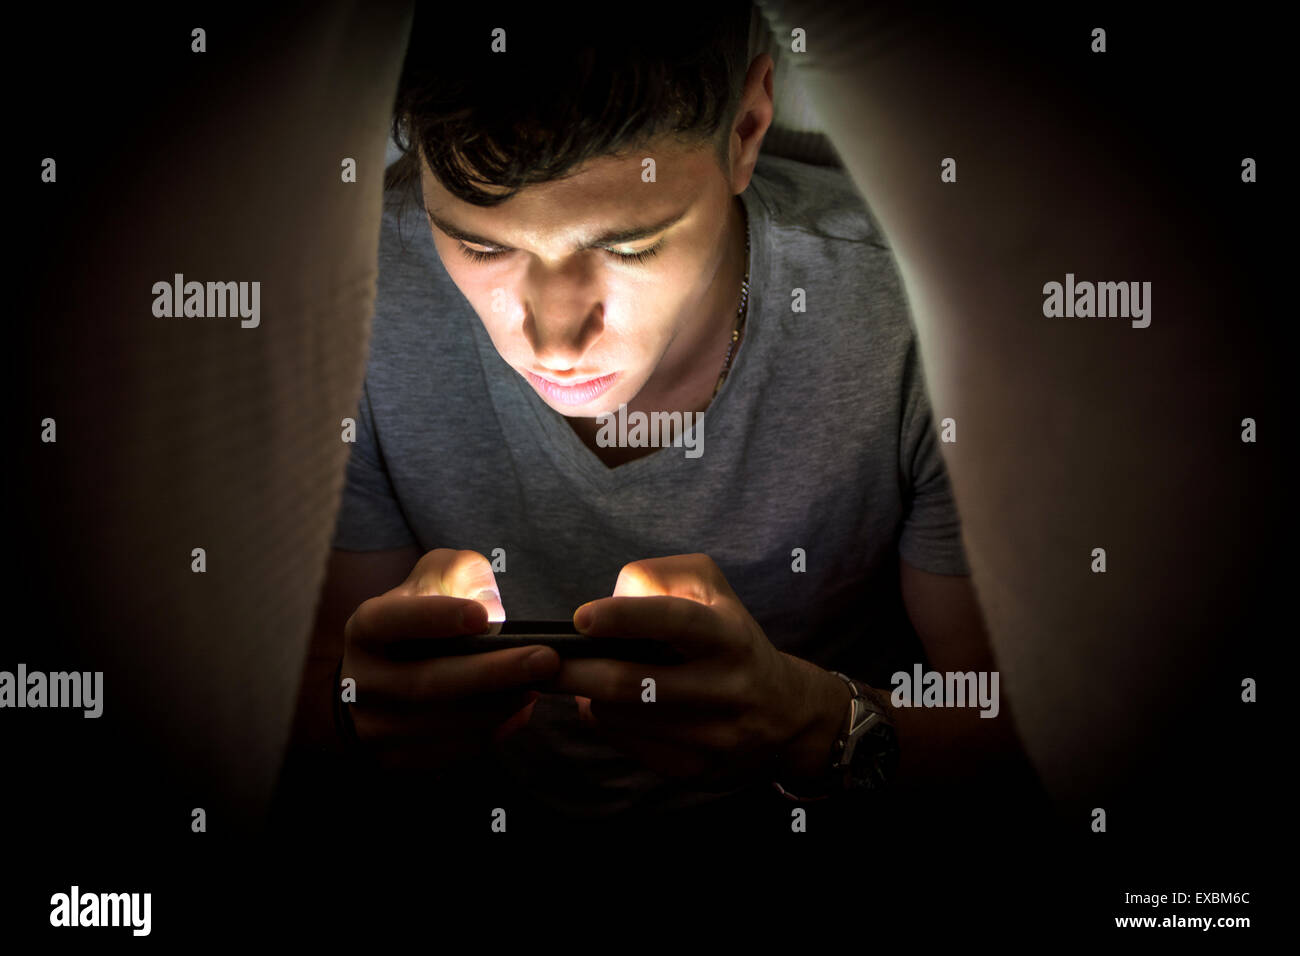 Teenager-Jungen versteckt sich unter einer Decke während der Benutzung eines Mobiltelefons für das Surfen im Internet oder privat zu chatten Stockfoto